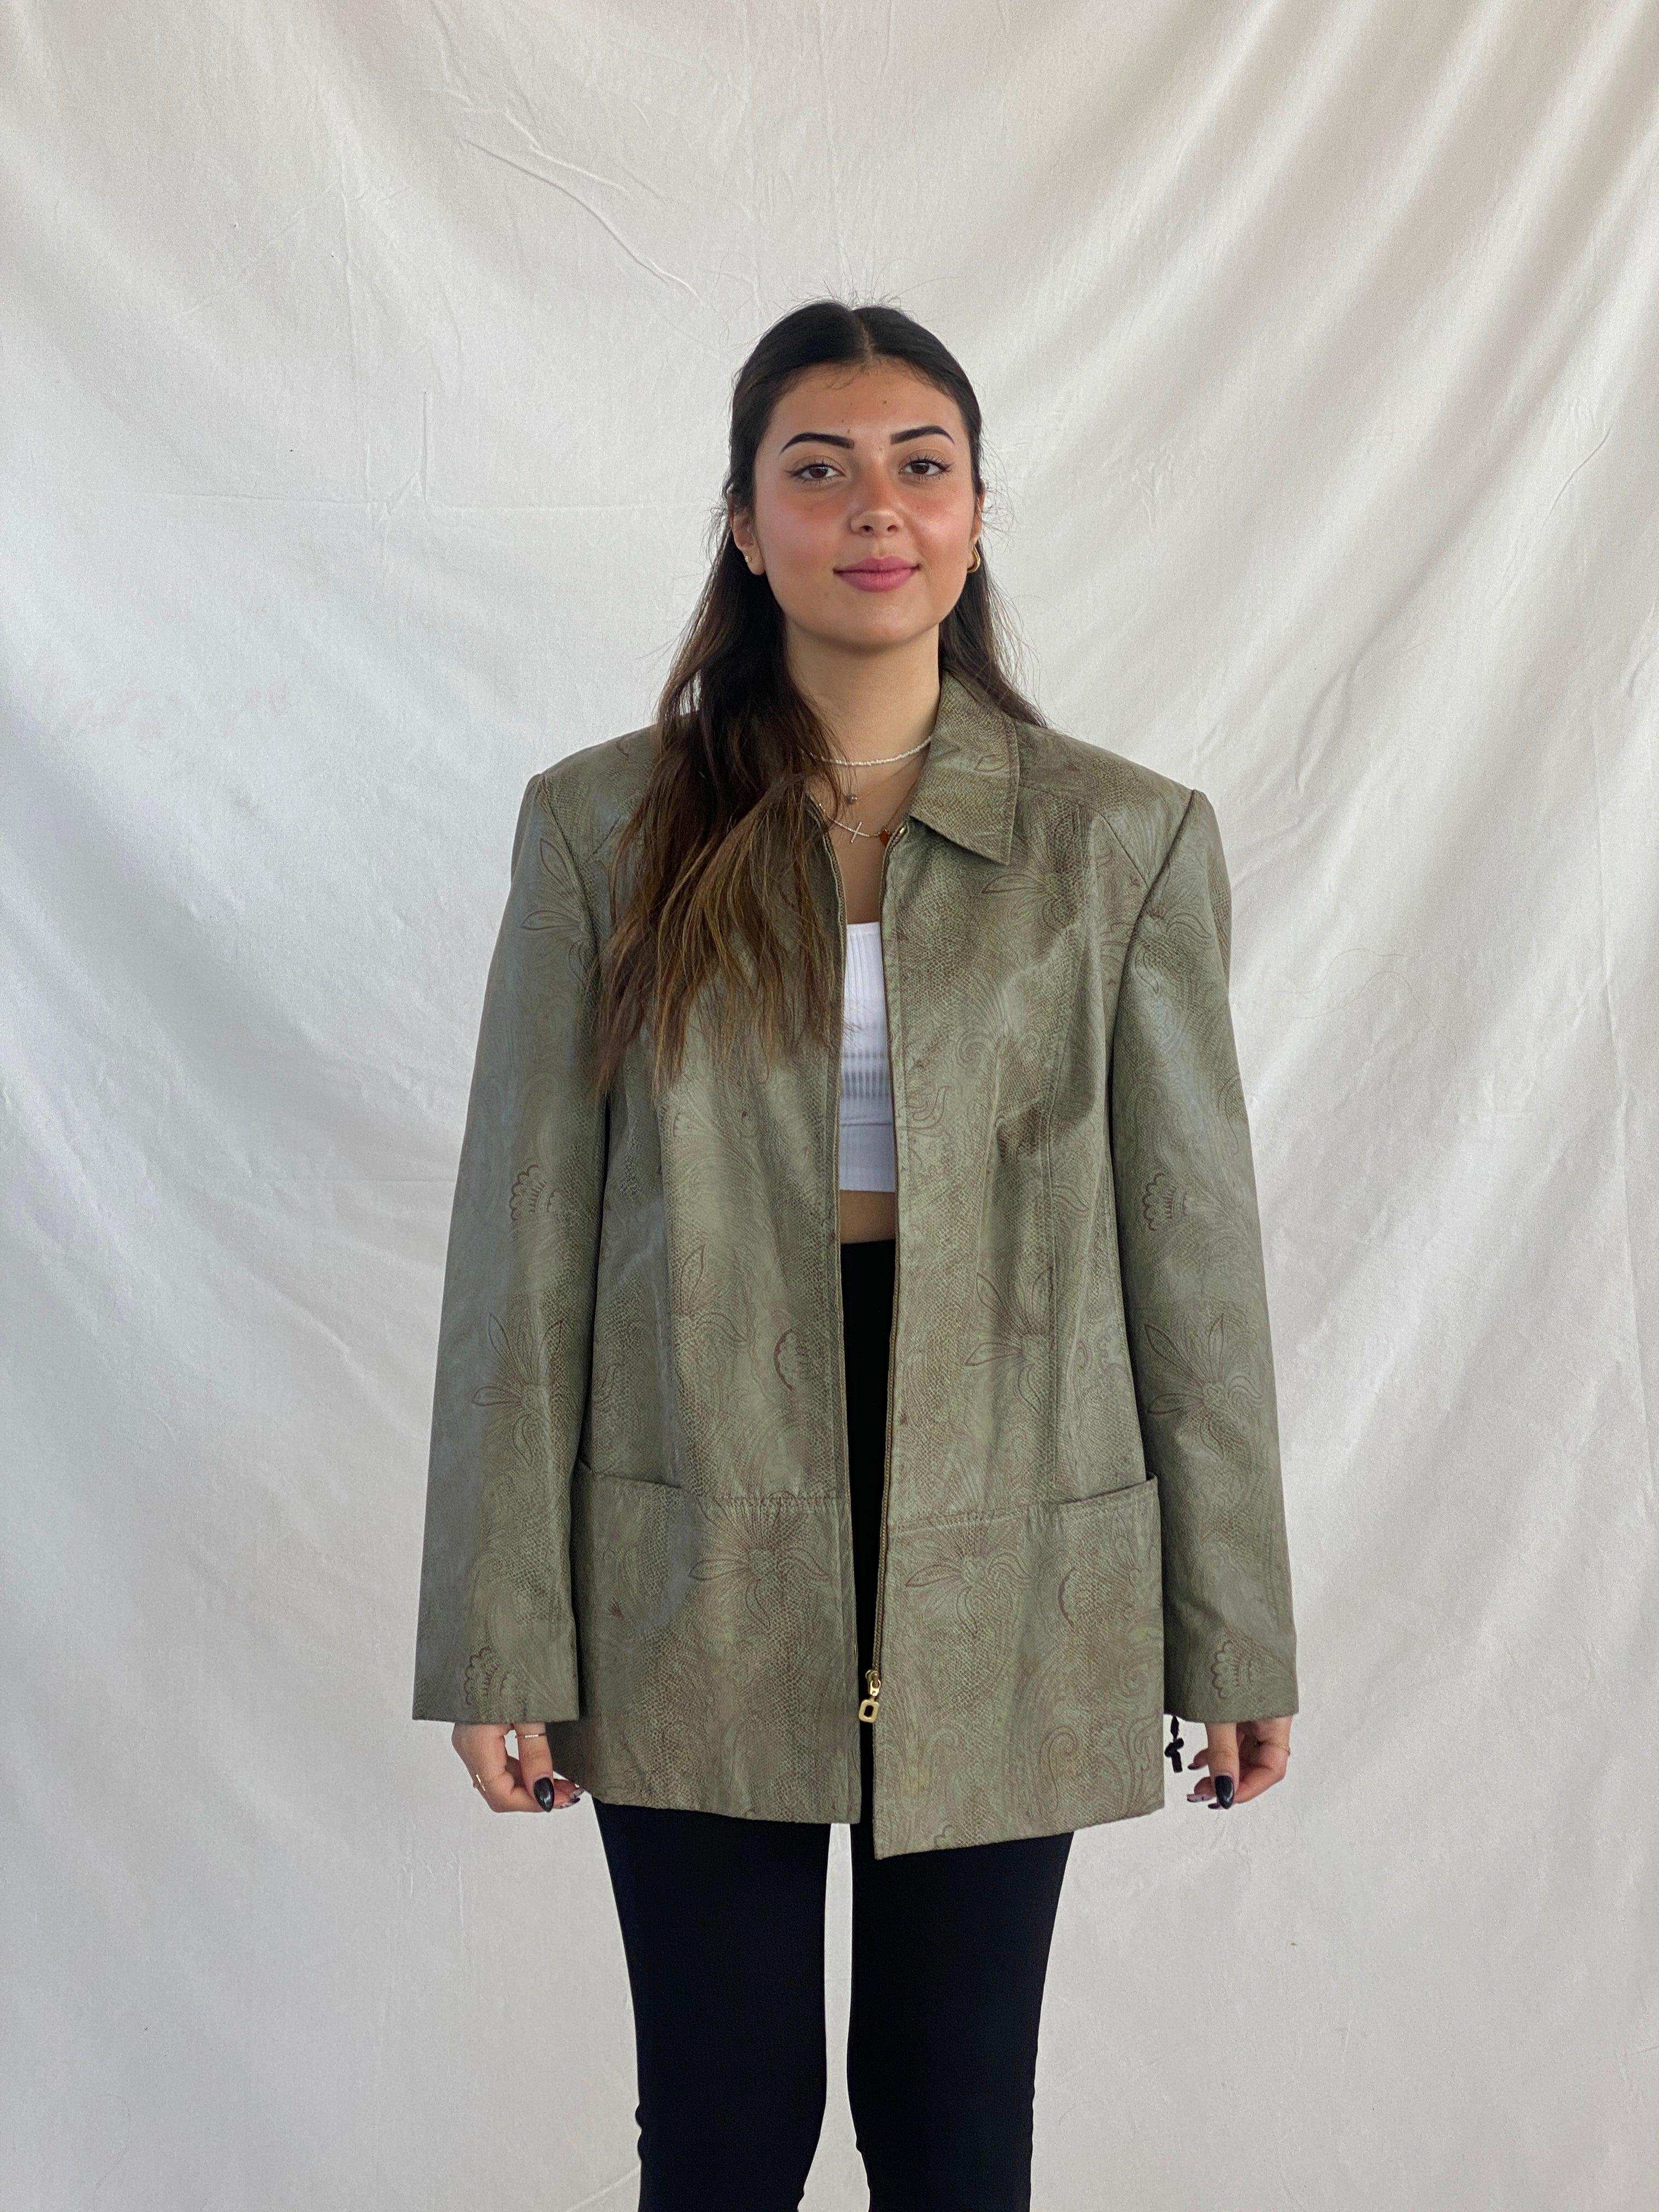 JDEFEG Dressy Jackets for Women Coat Retro Outwear Zipper Jacket